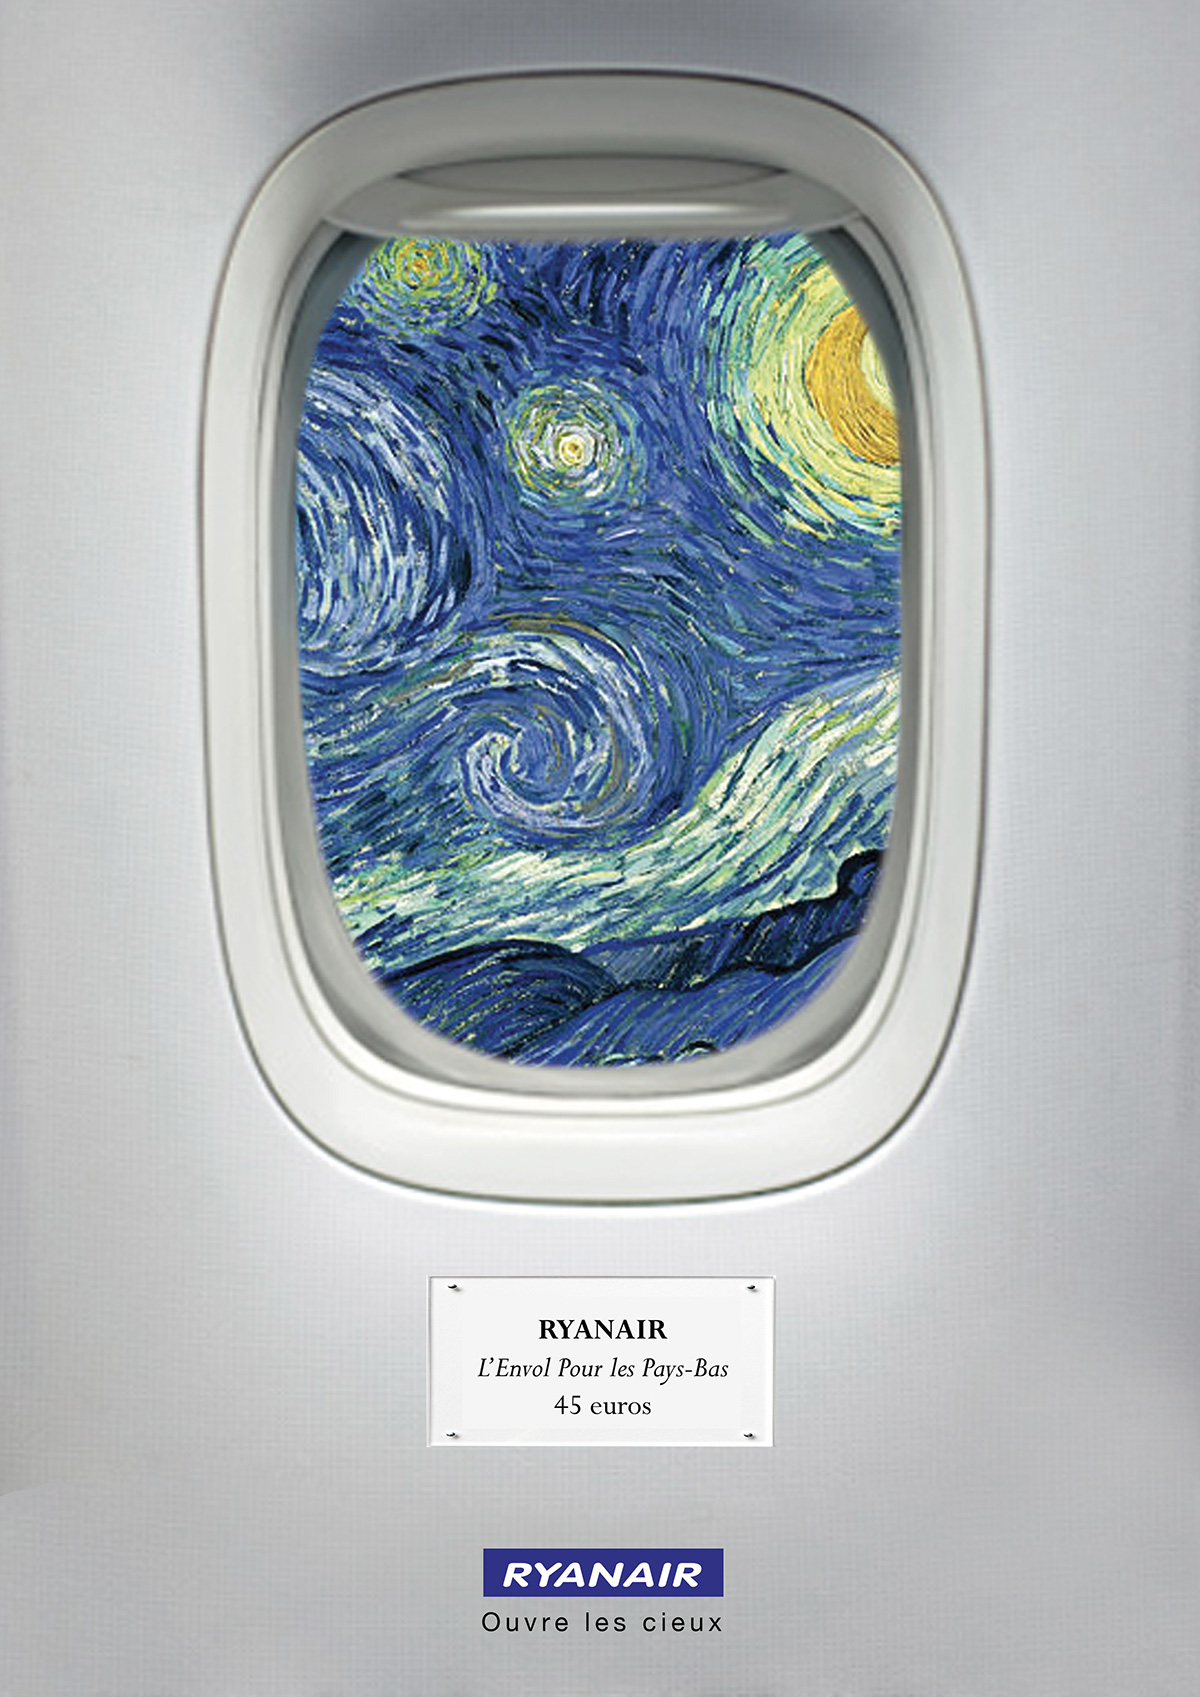 Ryanair publicité ad low-cost trip art hublot Window ciel SKY